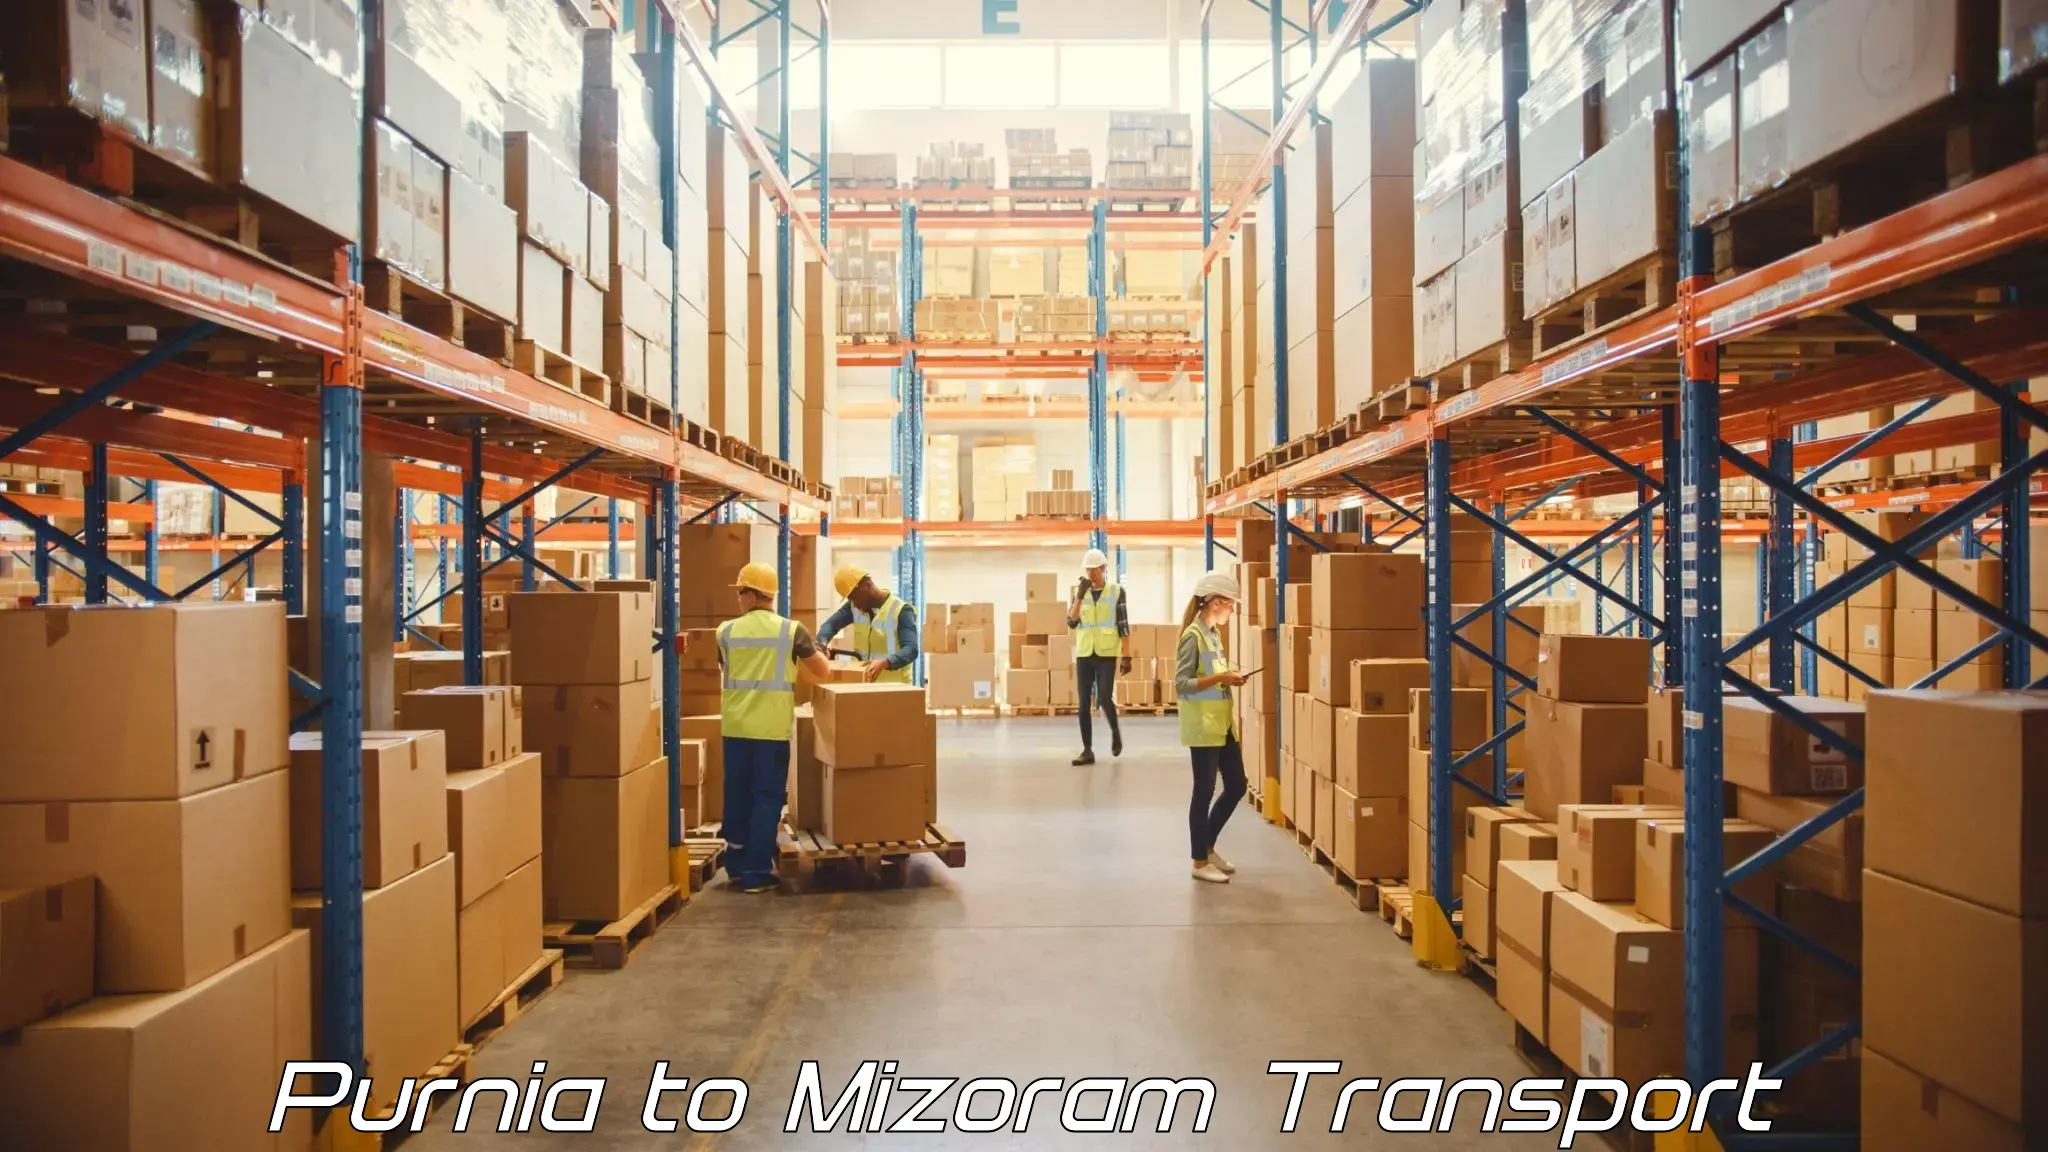 Furniture transport service Purnia to NIT Aizawl